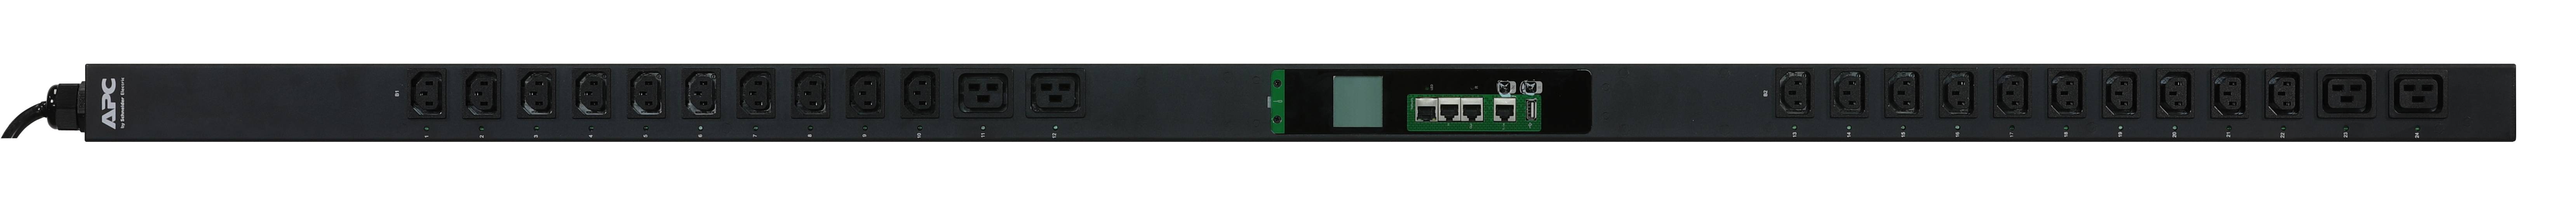 Rca Informatique - image du produit : EASY PDU SWITCHED ZEROU 16A 230 (20)C13 AND (4)C19 IEC309